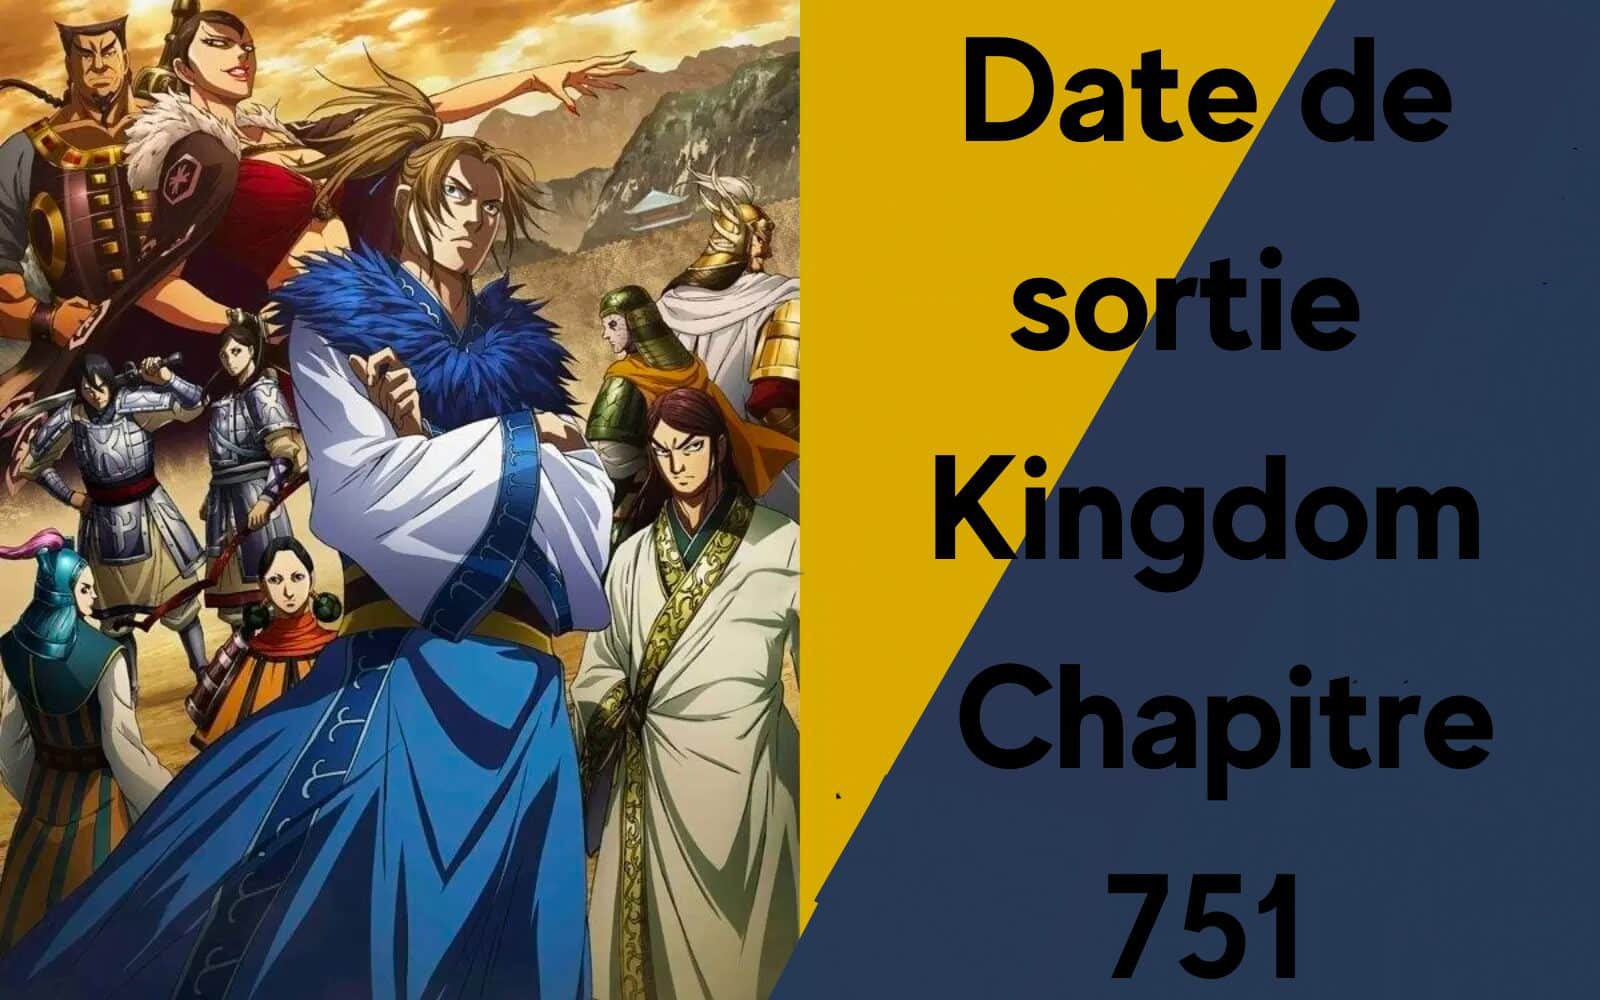 Date de sortie Kingdom Chapitre 751